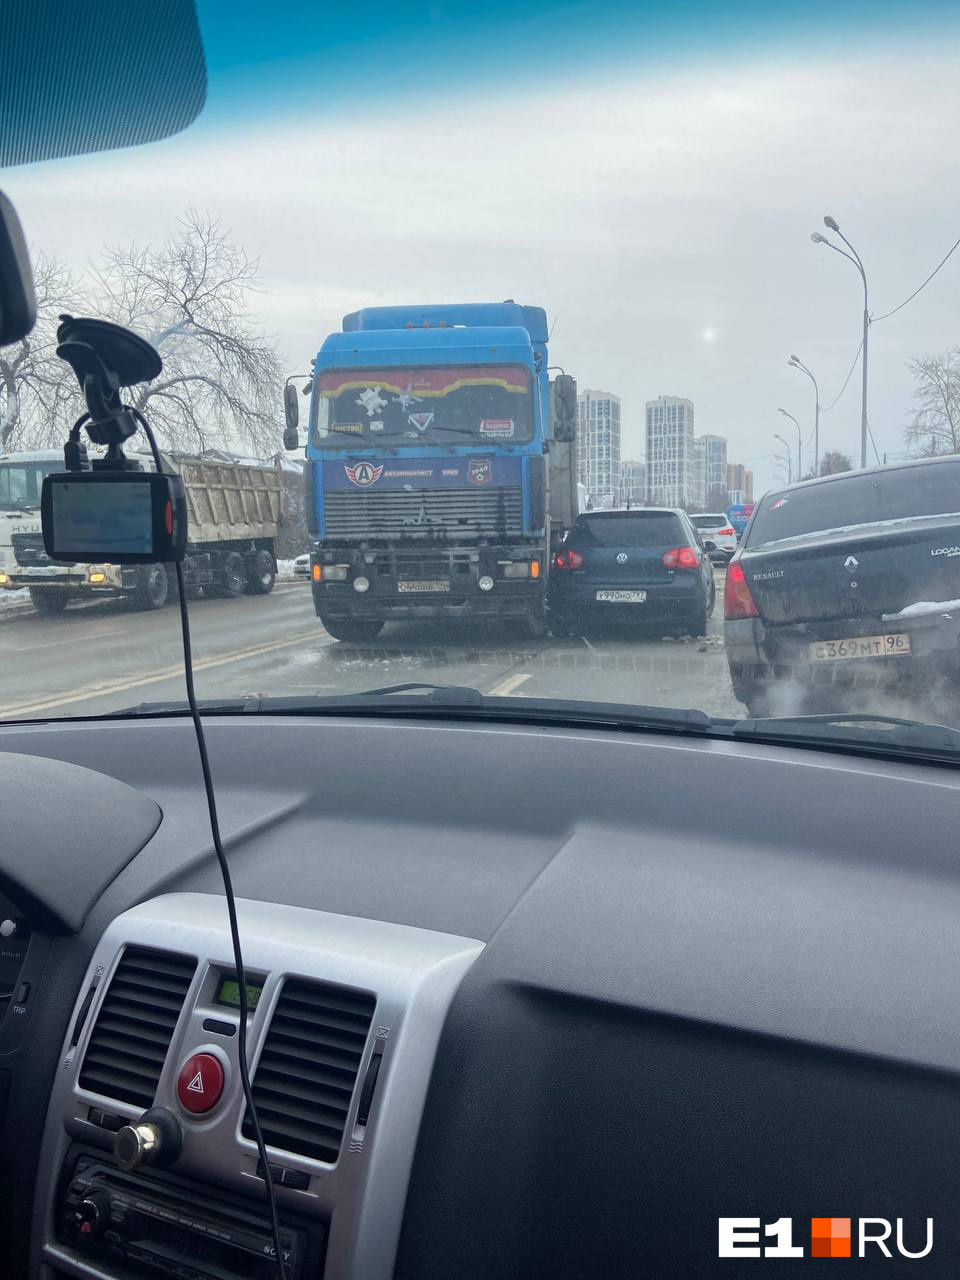 Одну из главных улиц Екатеринбурга внезапно перегородила фура. Водители встали в пробку